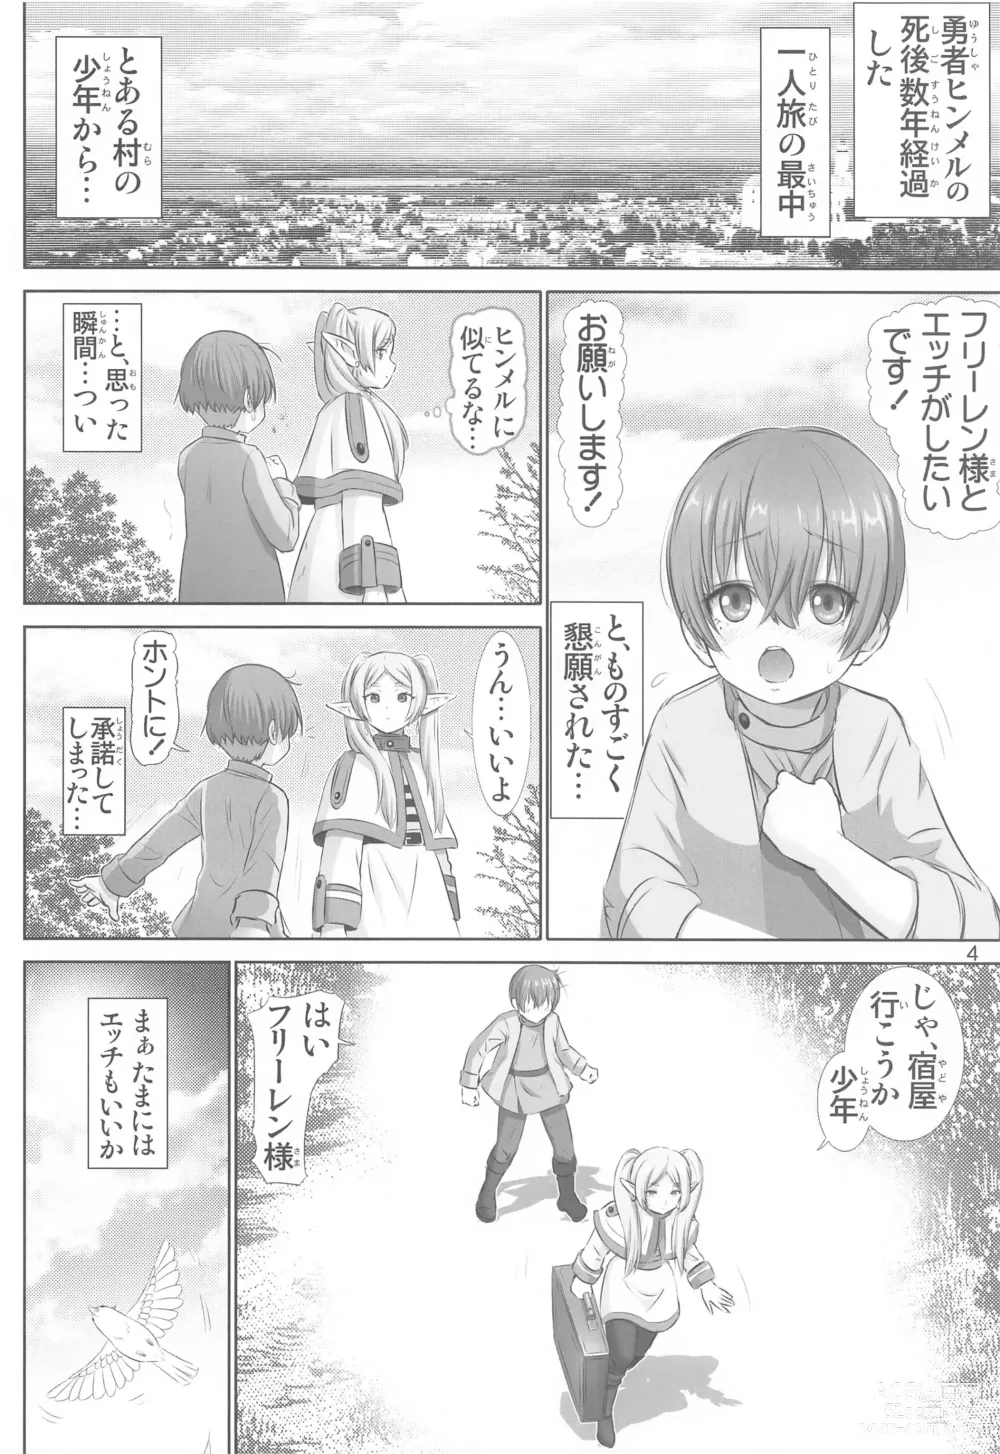 Page 3 of doujinshi Etsuraku no Frieren